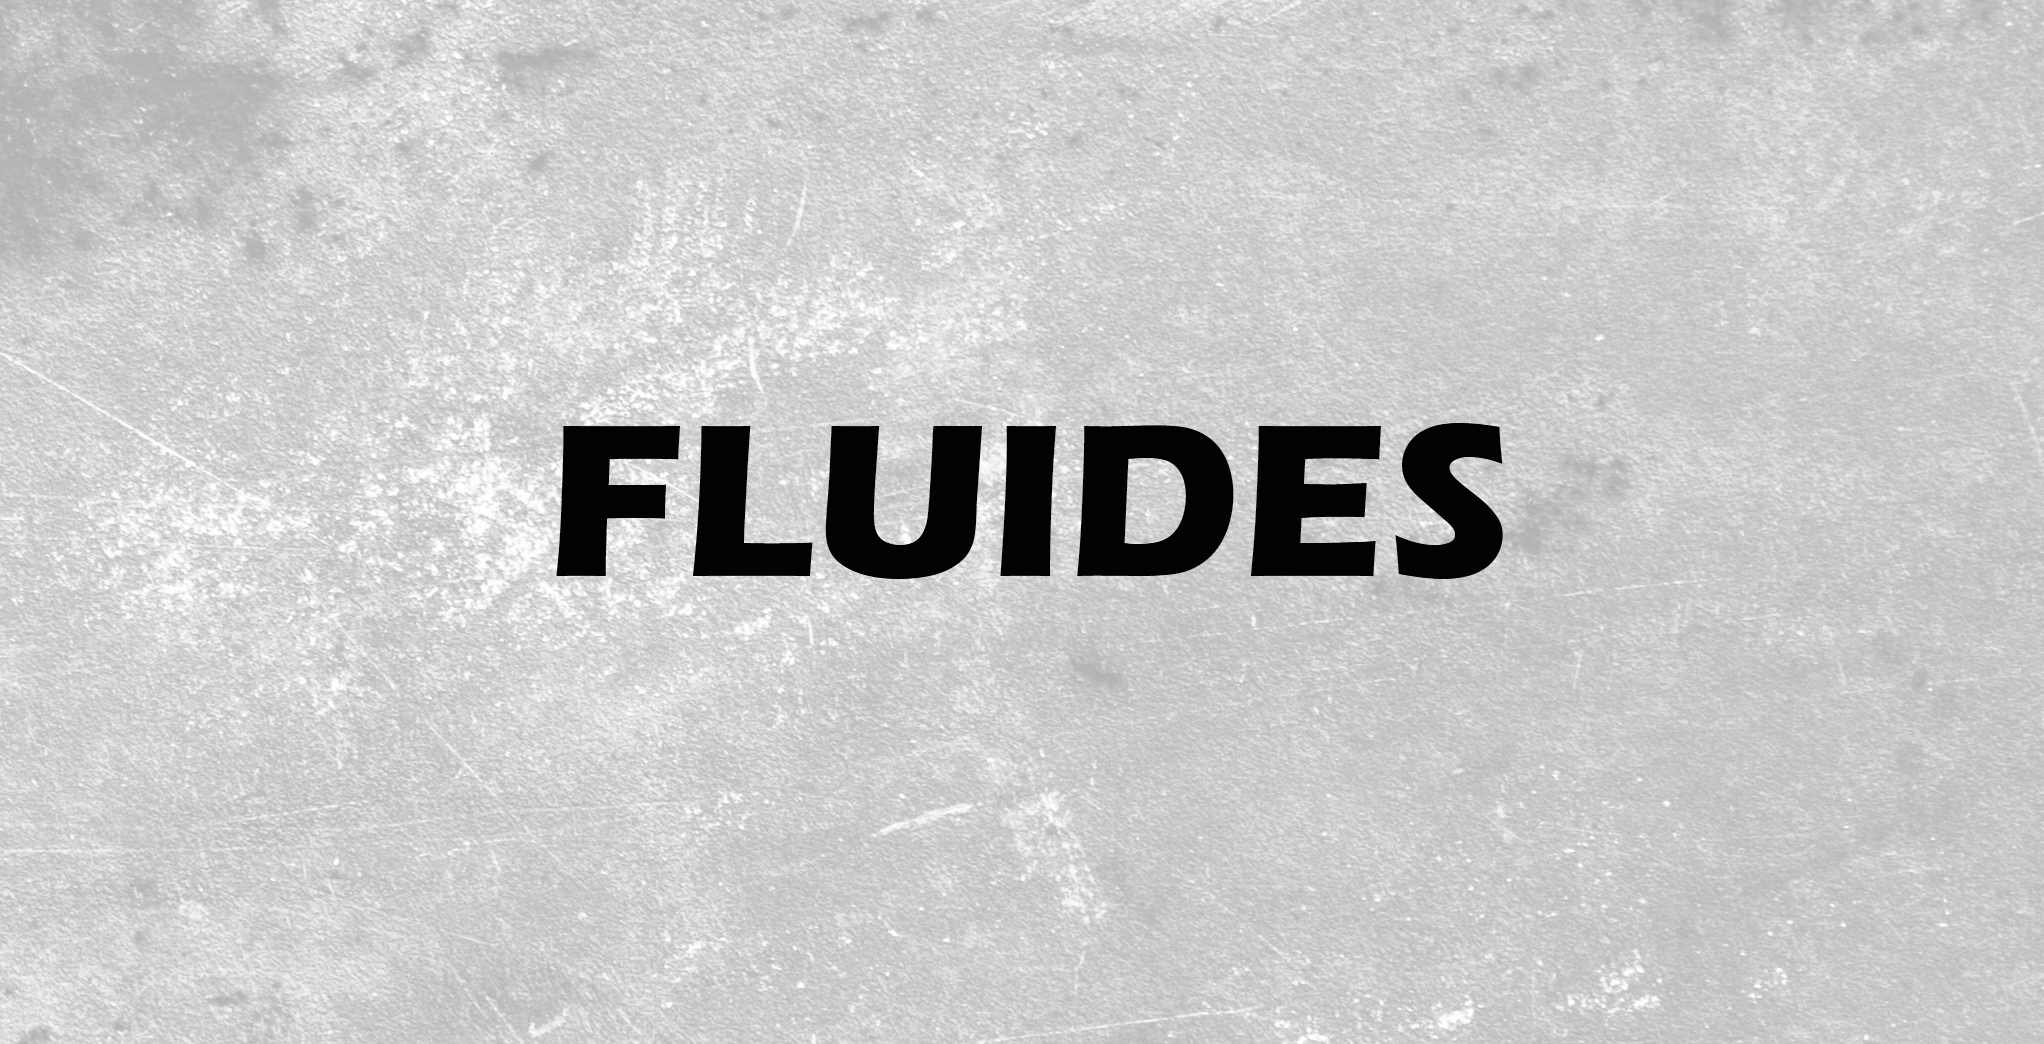 Fluides